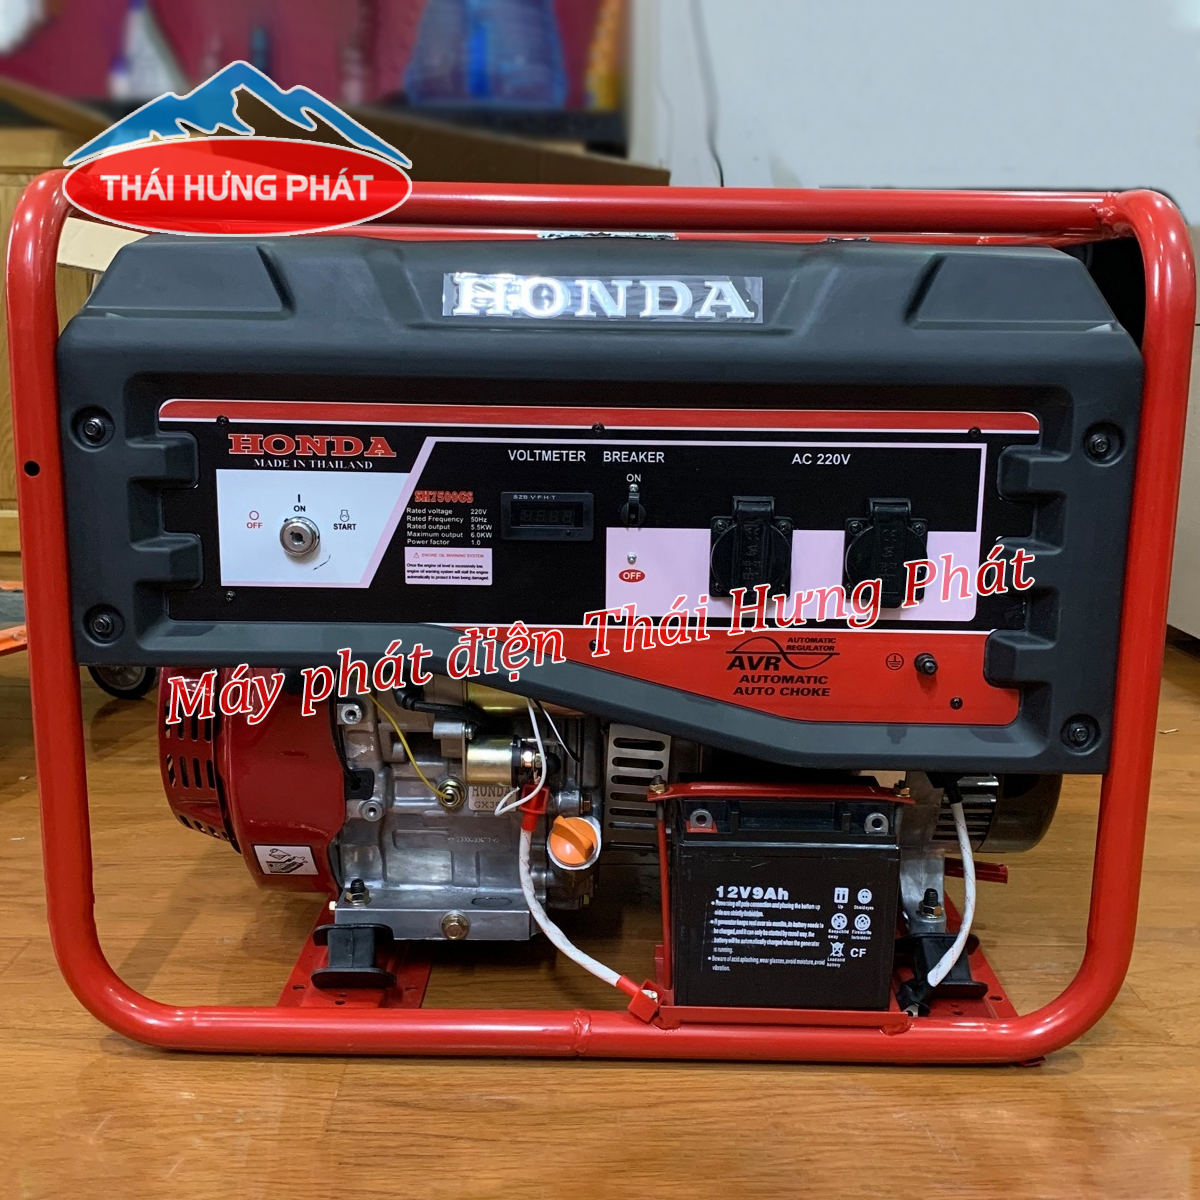 Máy phát điện Honda đề nổ hay máy phát điện Honda giật nổ tốt hơn?